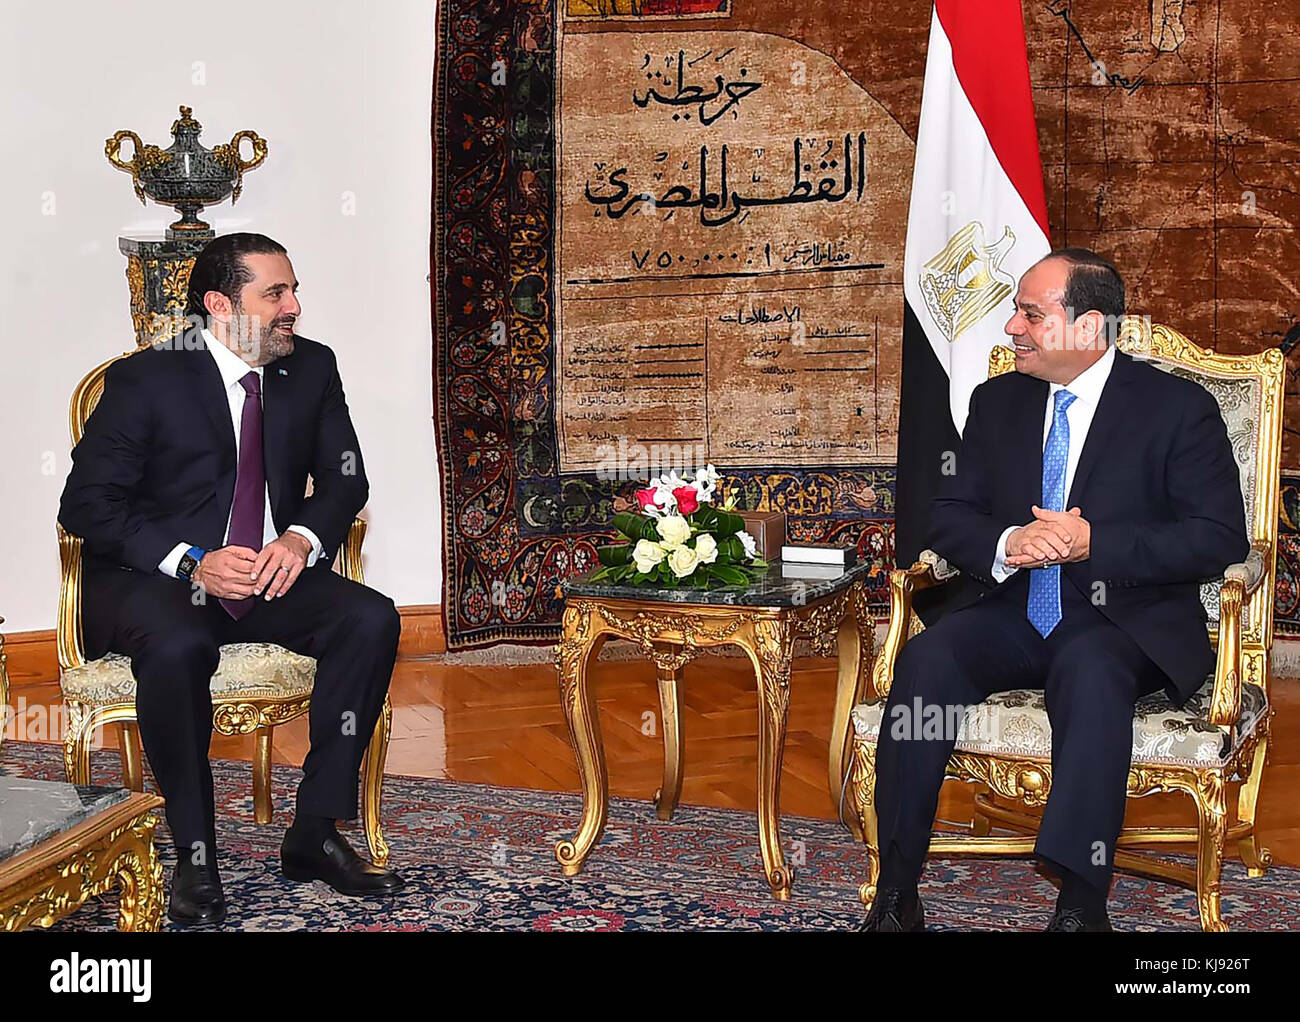 Le Caire, Egypte - 22 novembre 2017 - Le Premier ministre libanais Saad Hariri s'est arrêté brièvement en Egypte mardi pour des entretiens avec le président égyptien Abdel Fatah al sisi avant de retourner à Beyrouth, où le Liban n'est pas encore remis de sa surprise, démission le 4 novembre 2009 à un discours de l'Arabie saoudite, au milieu d'une crise régionale. (Document de séance de photos) Banque D'Images